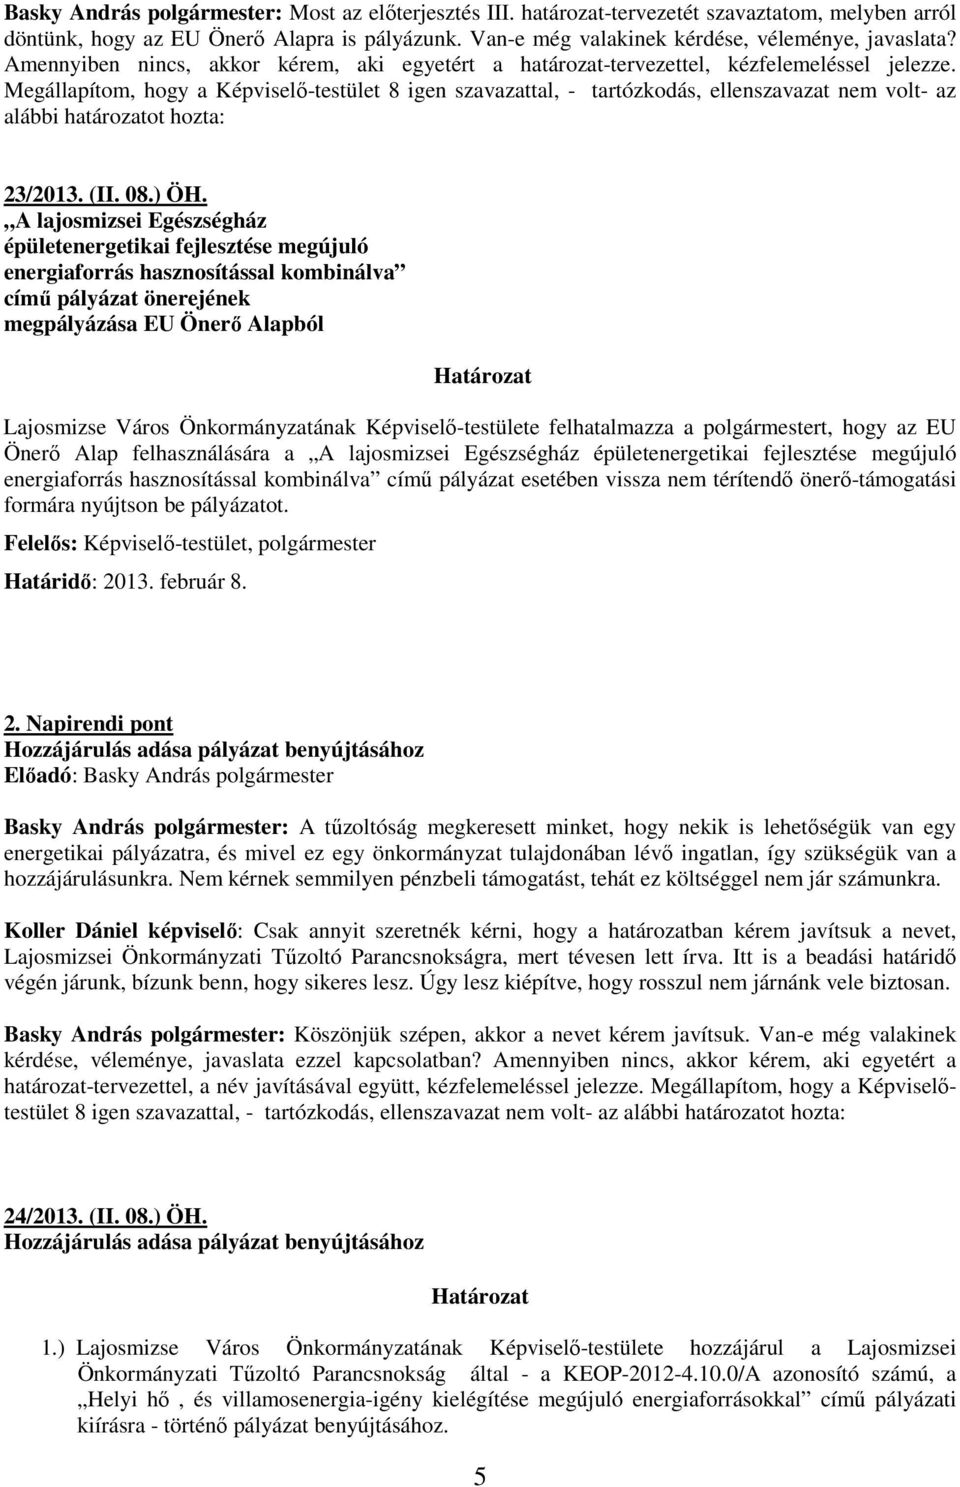 Megállapítom, hogy a Képviselı-testület 8 igen szavazattal, - tartózkodás, ellenszavazat nem volt- az alábbi határozatot hozta: 23/2013. (II. 08.) ÖH.